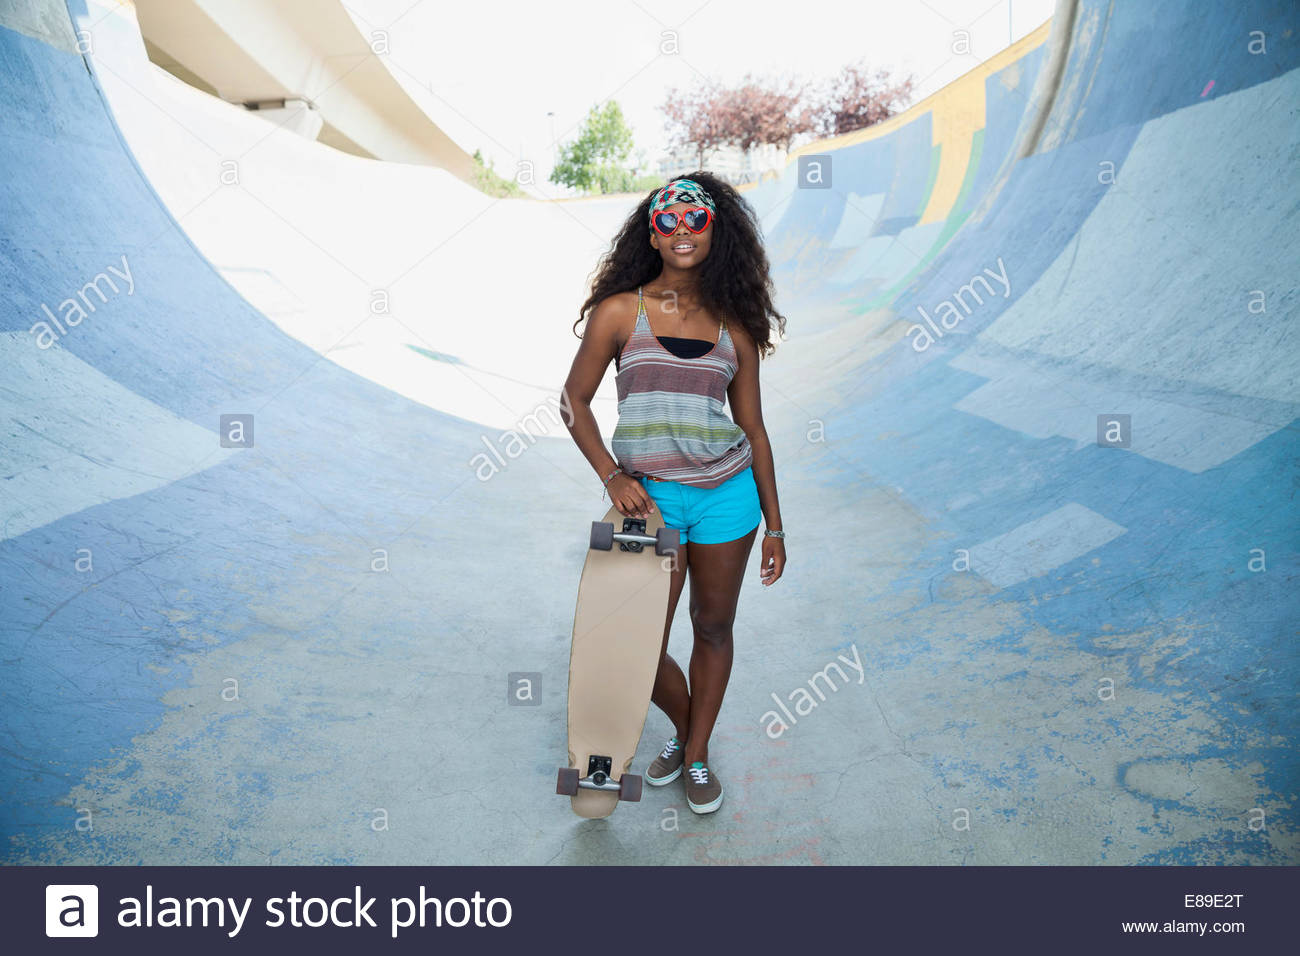 Retrato de una adolescente la celebración de skateboard en la rampa Foto de stock